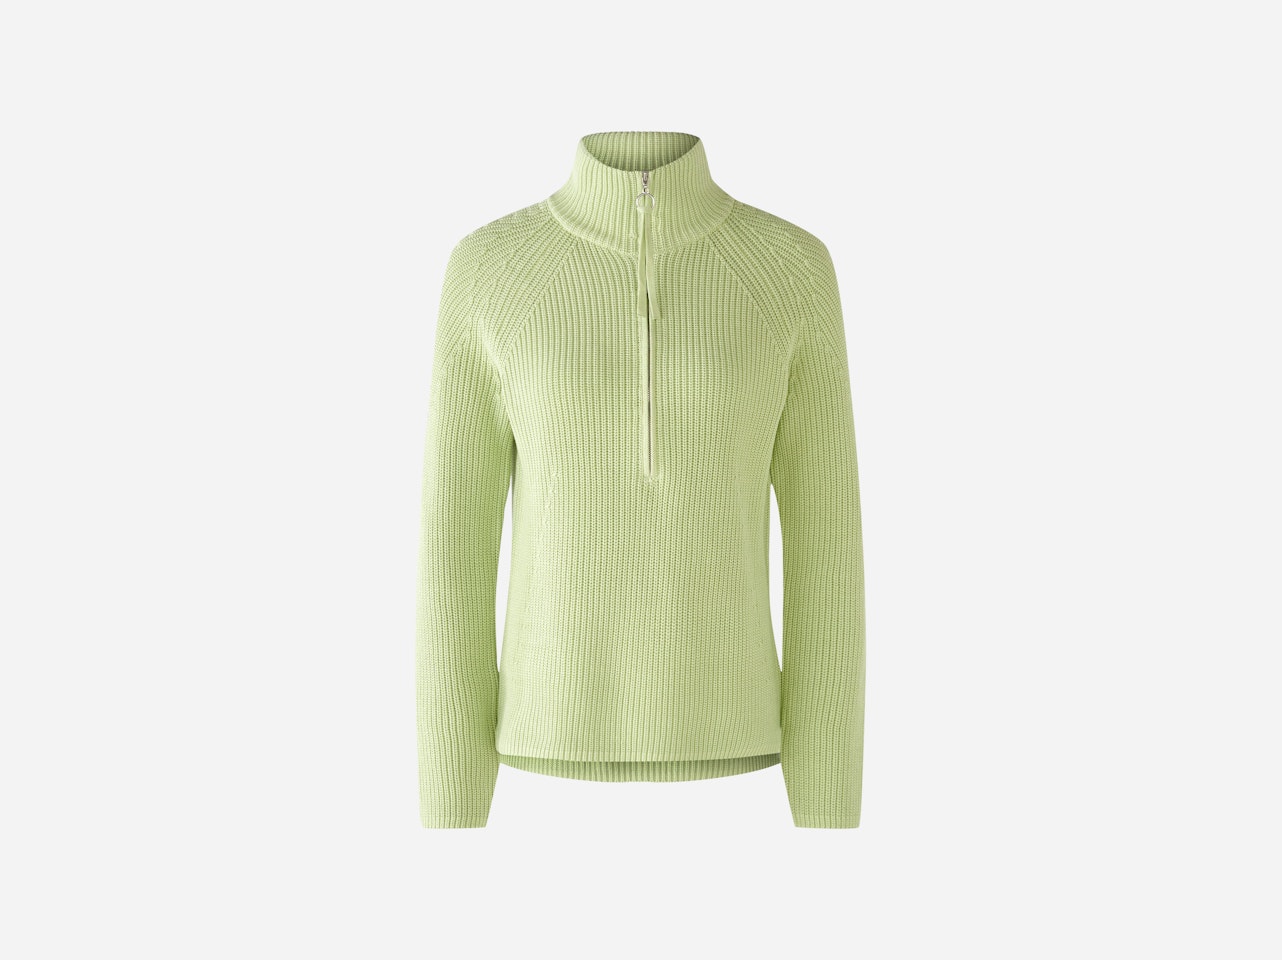 Bild 7 von Knitted jumper  in 100% cotton in light green | Oui